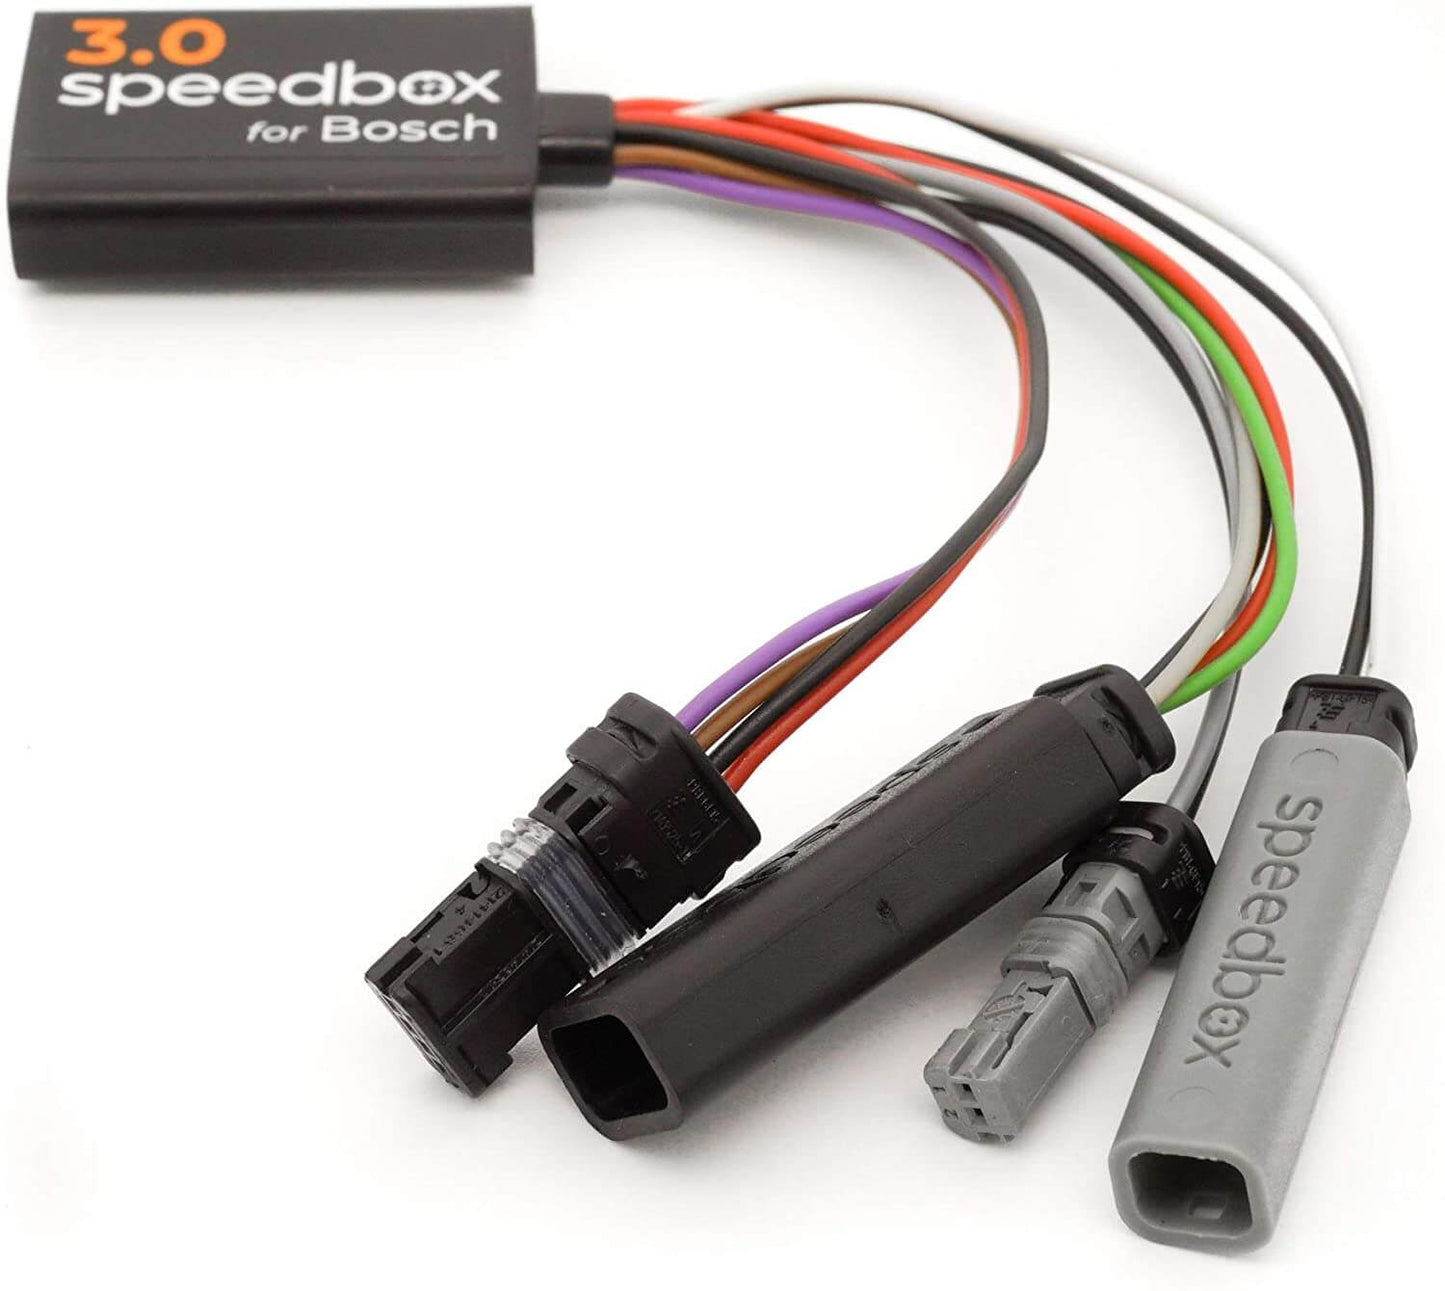 Speedbox 3.0 Tuning Chip for Bosch eBikes - 2